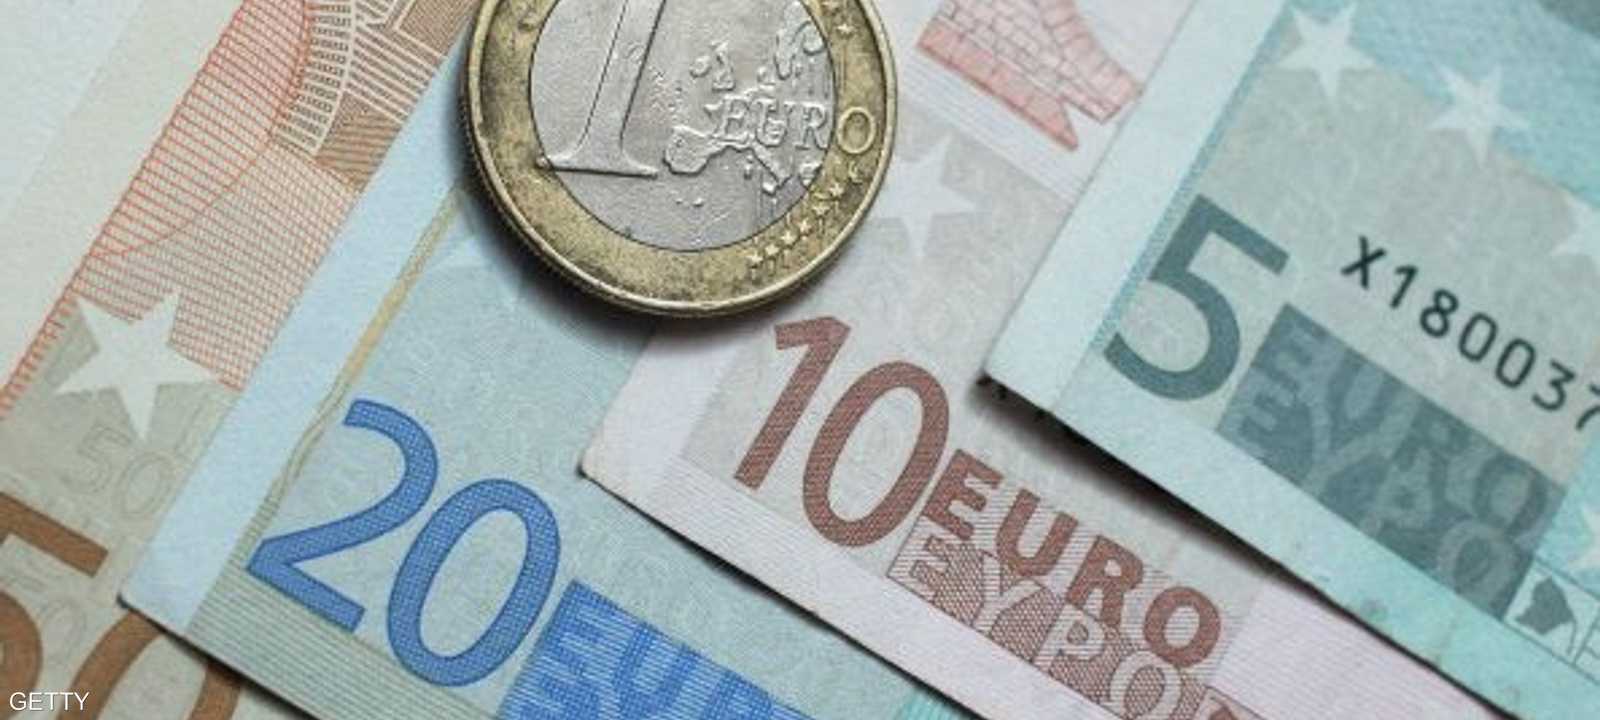 مكاسب اليورو لا تزال محدودة